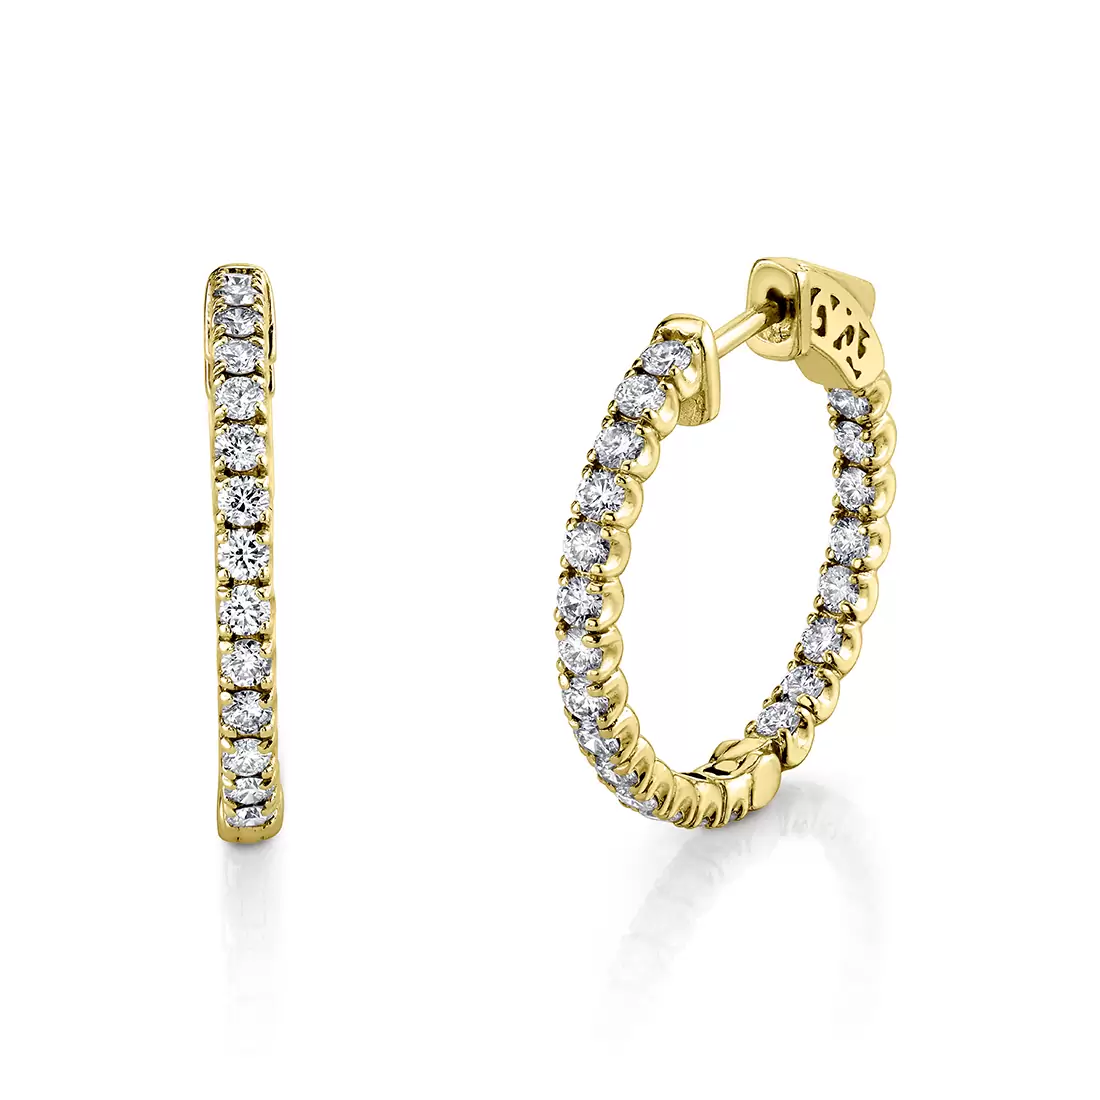 24mm diamond hoop earrings in yellow gold